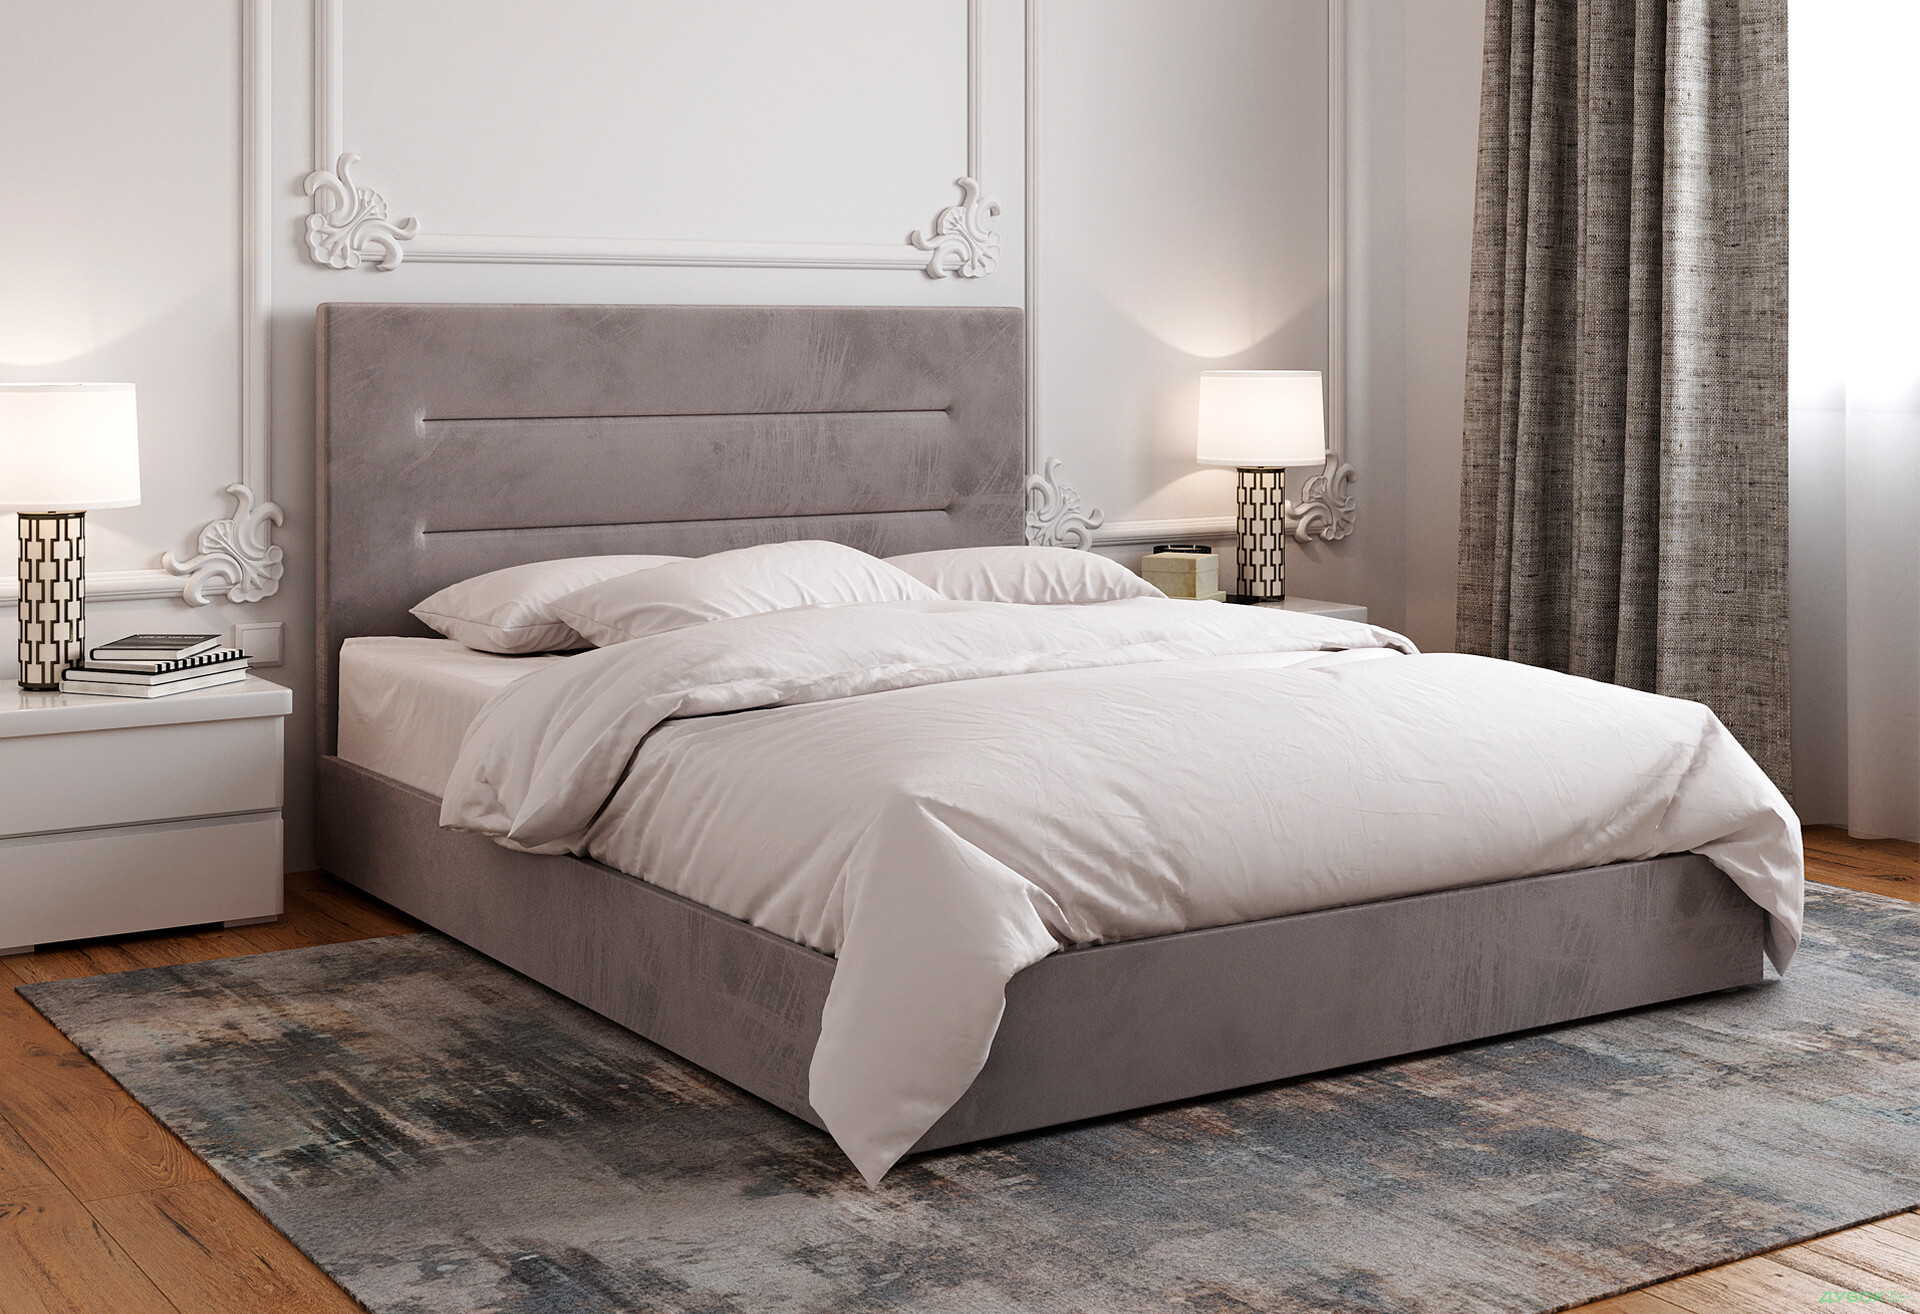 Фото 3 - Ліжко-подіум Vika Горизонт 160х200 см підйомне, матрац жакард, незалежний блок, сірий 